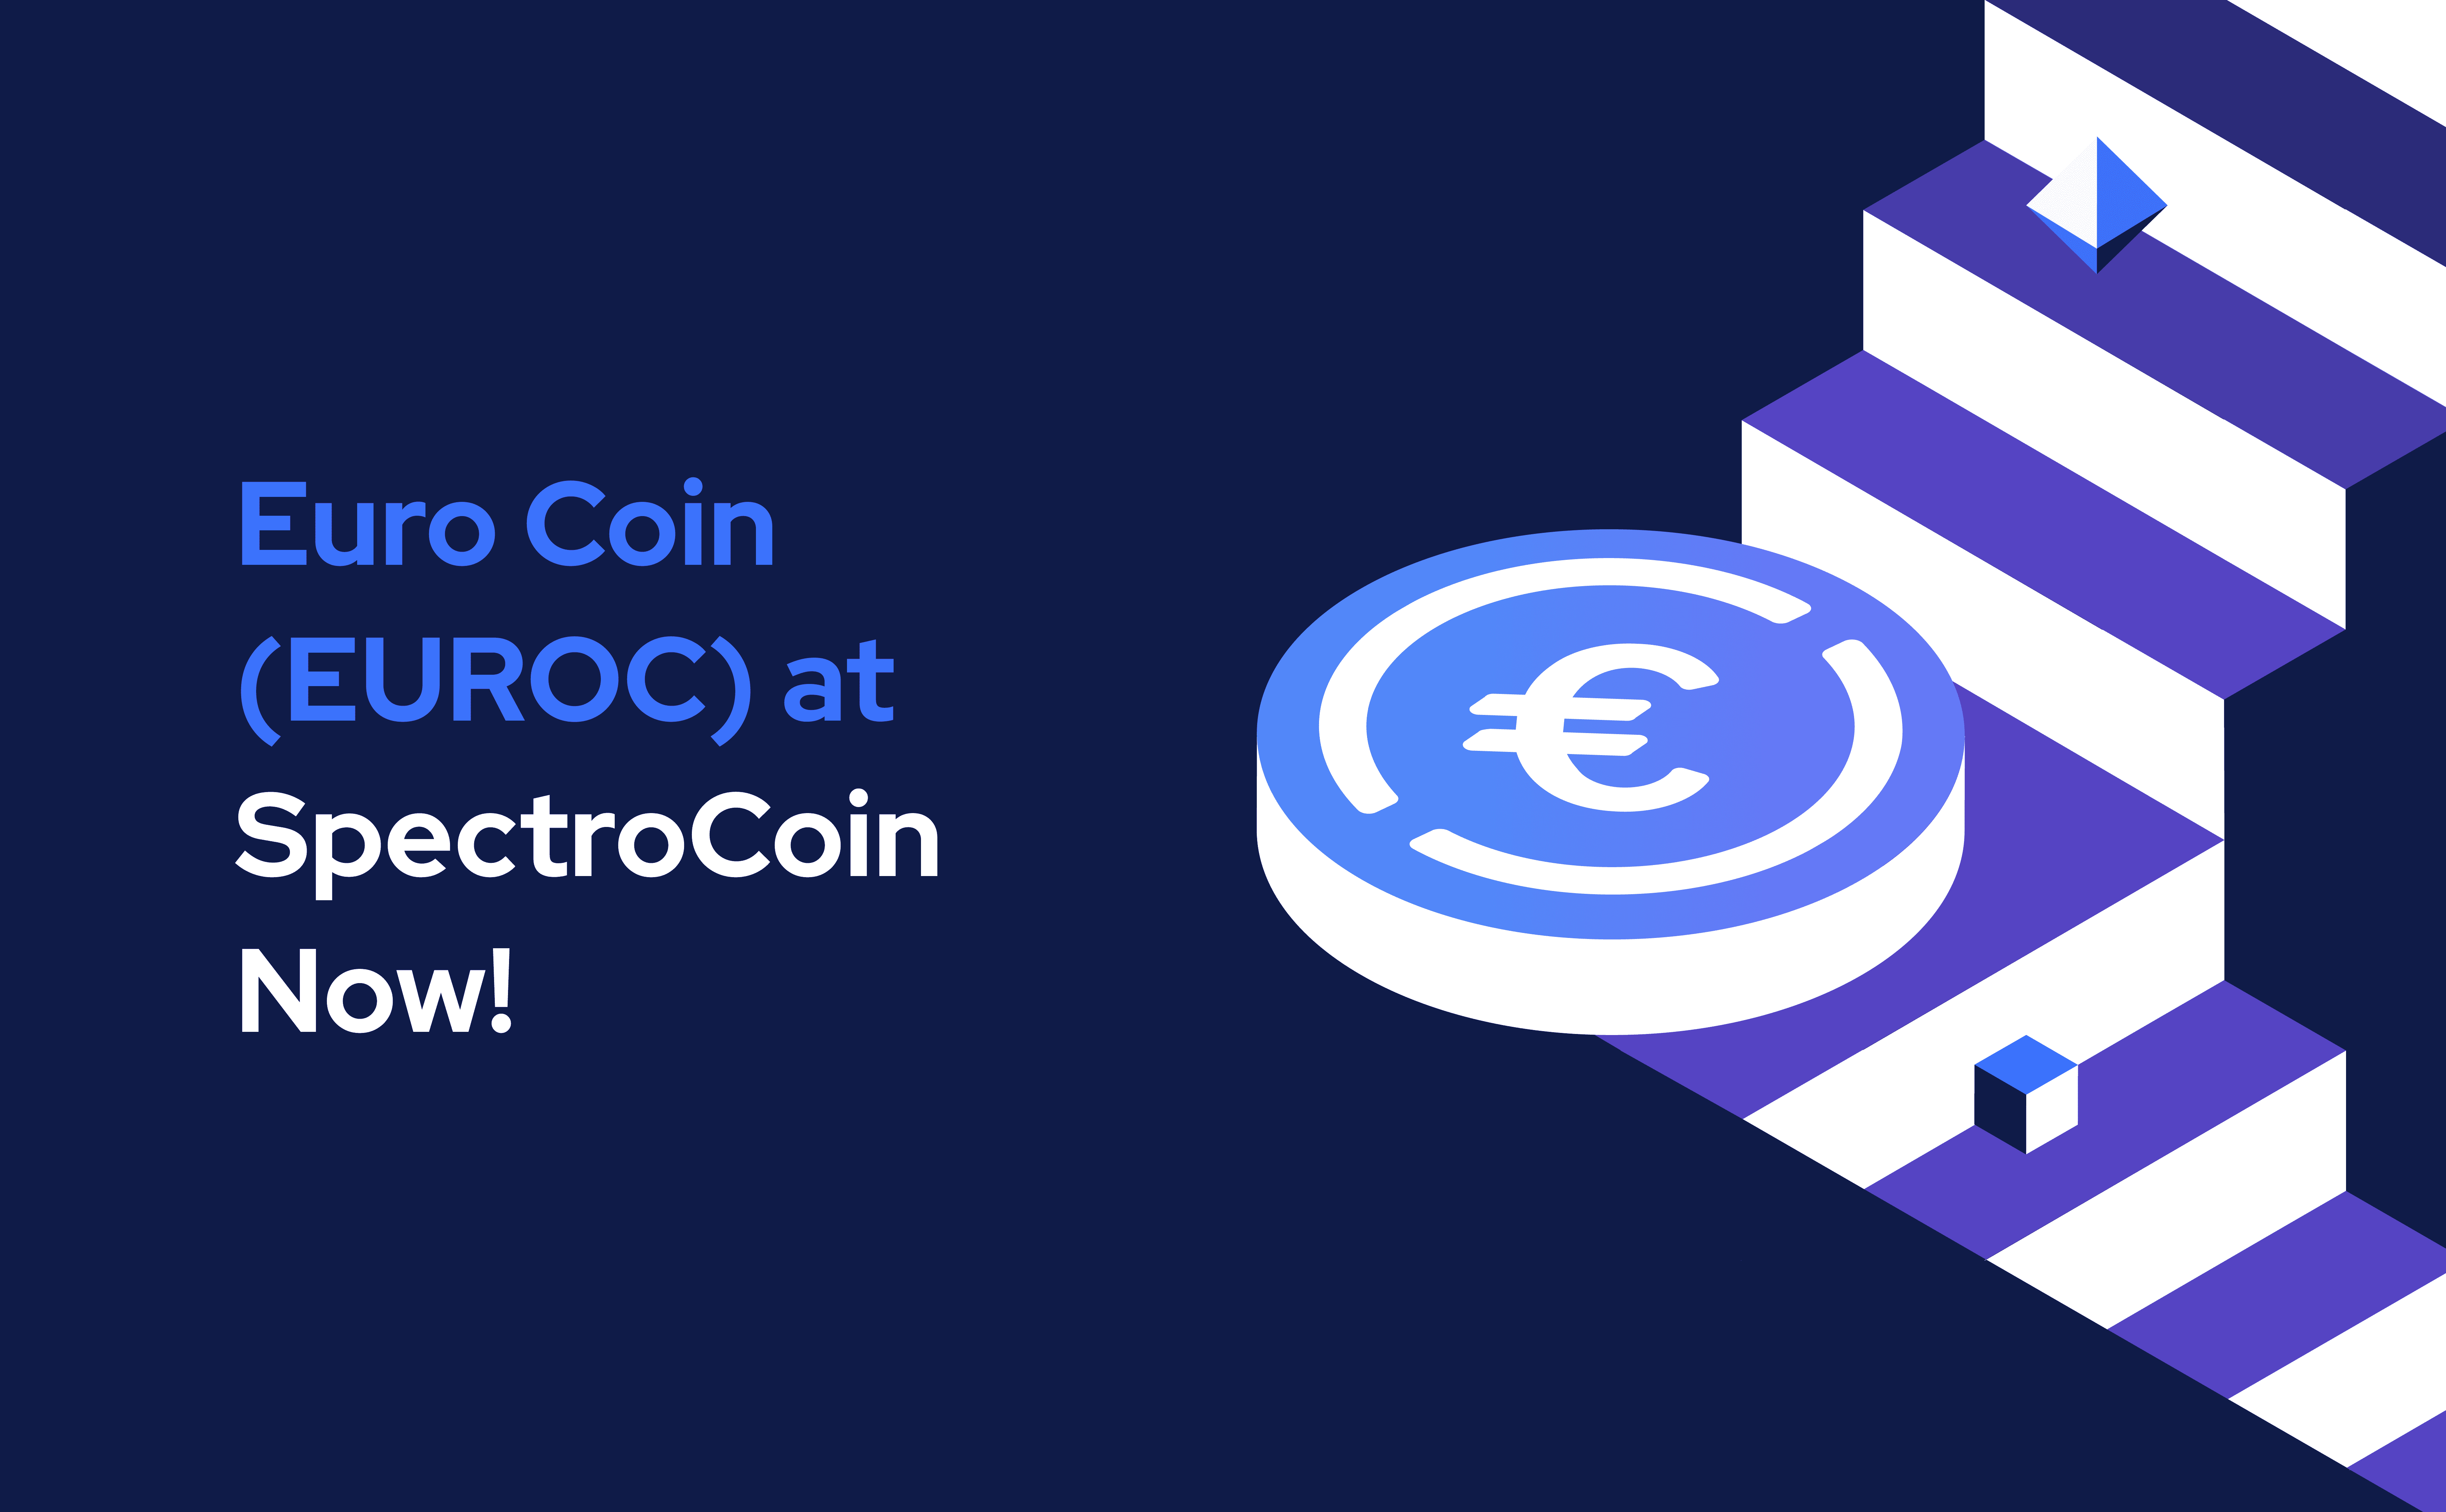 Снимайте, торгуйте и расплачивайтесь Euro Coin с помощью SpectroCoin